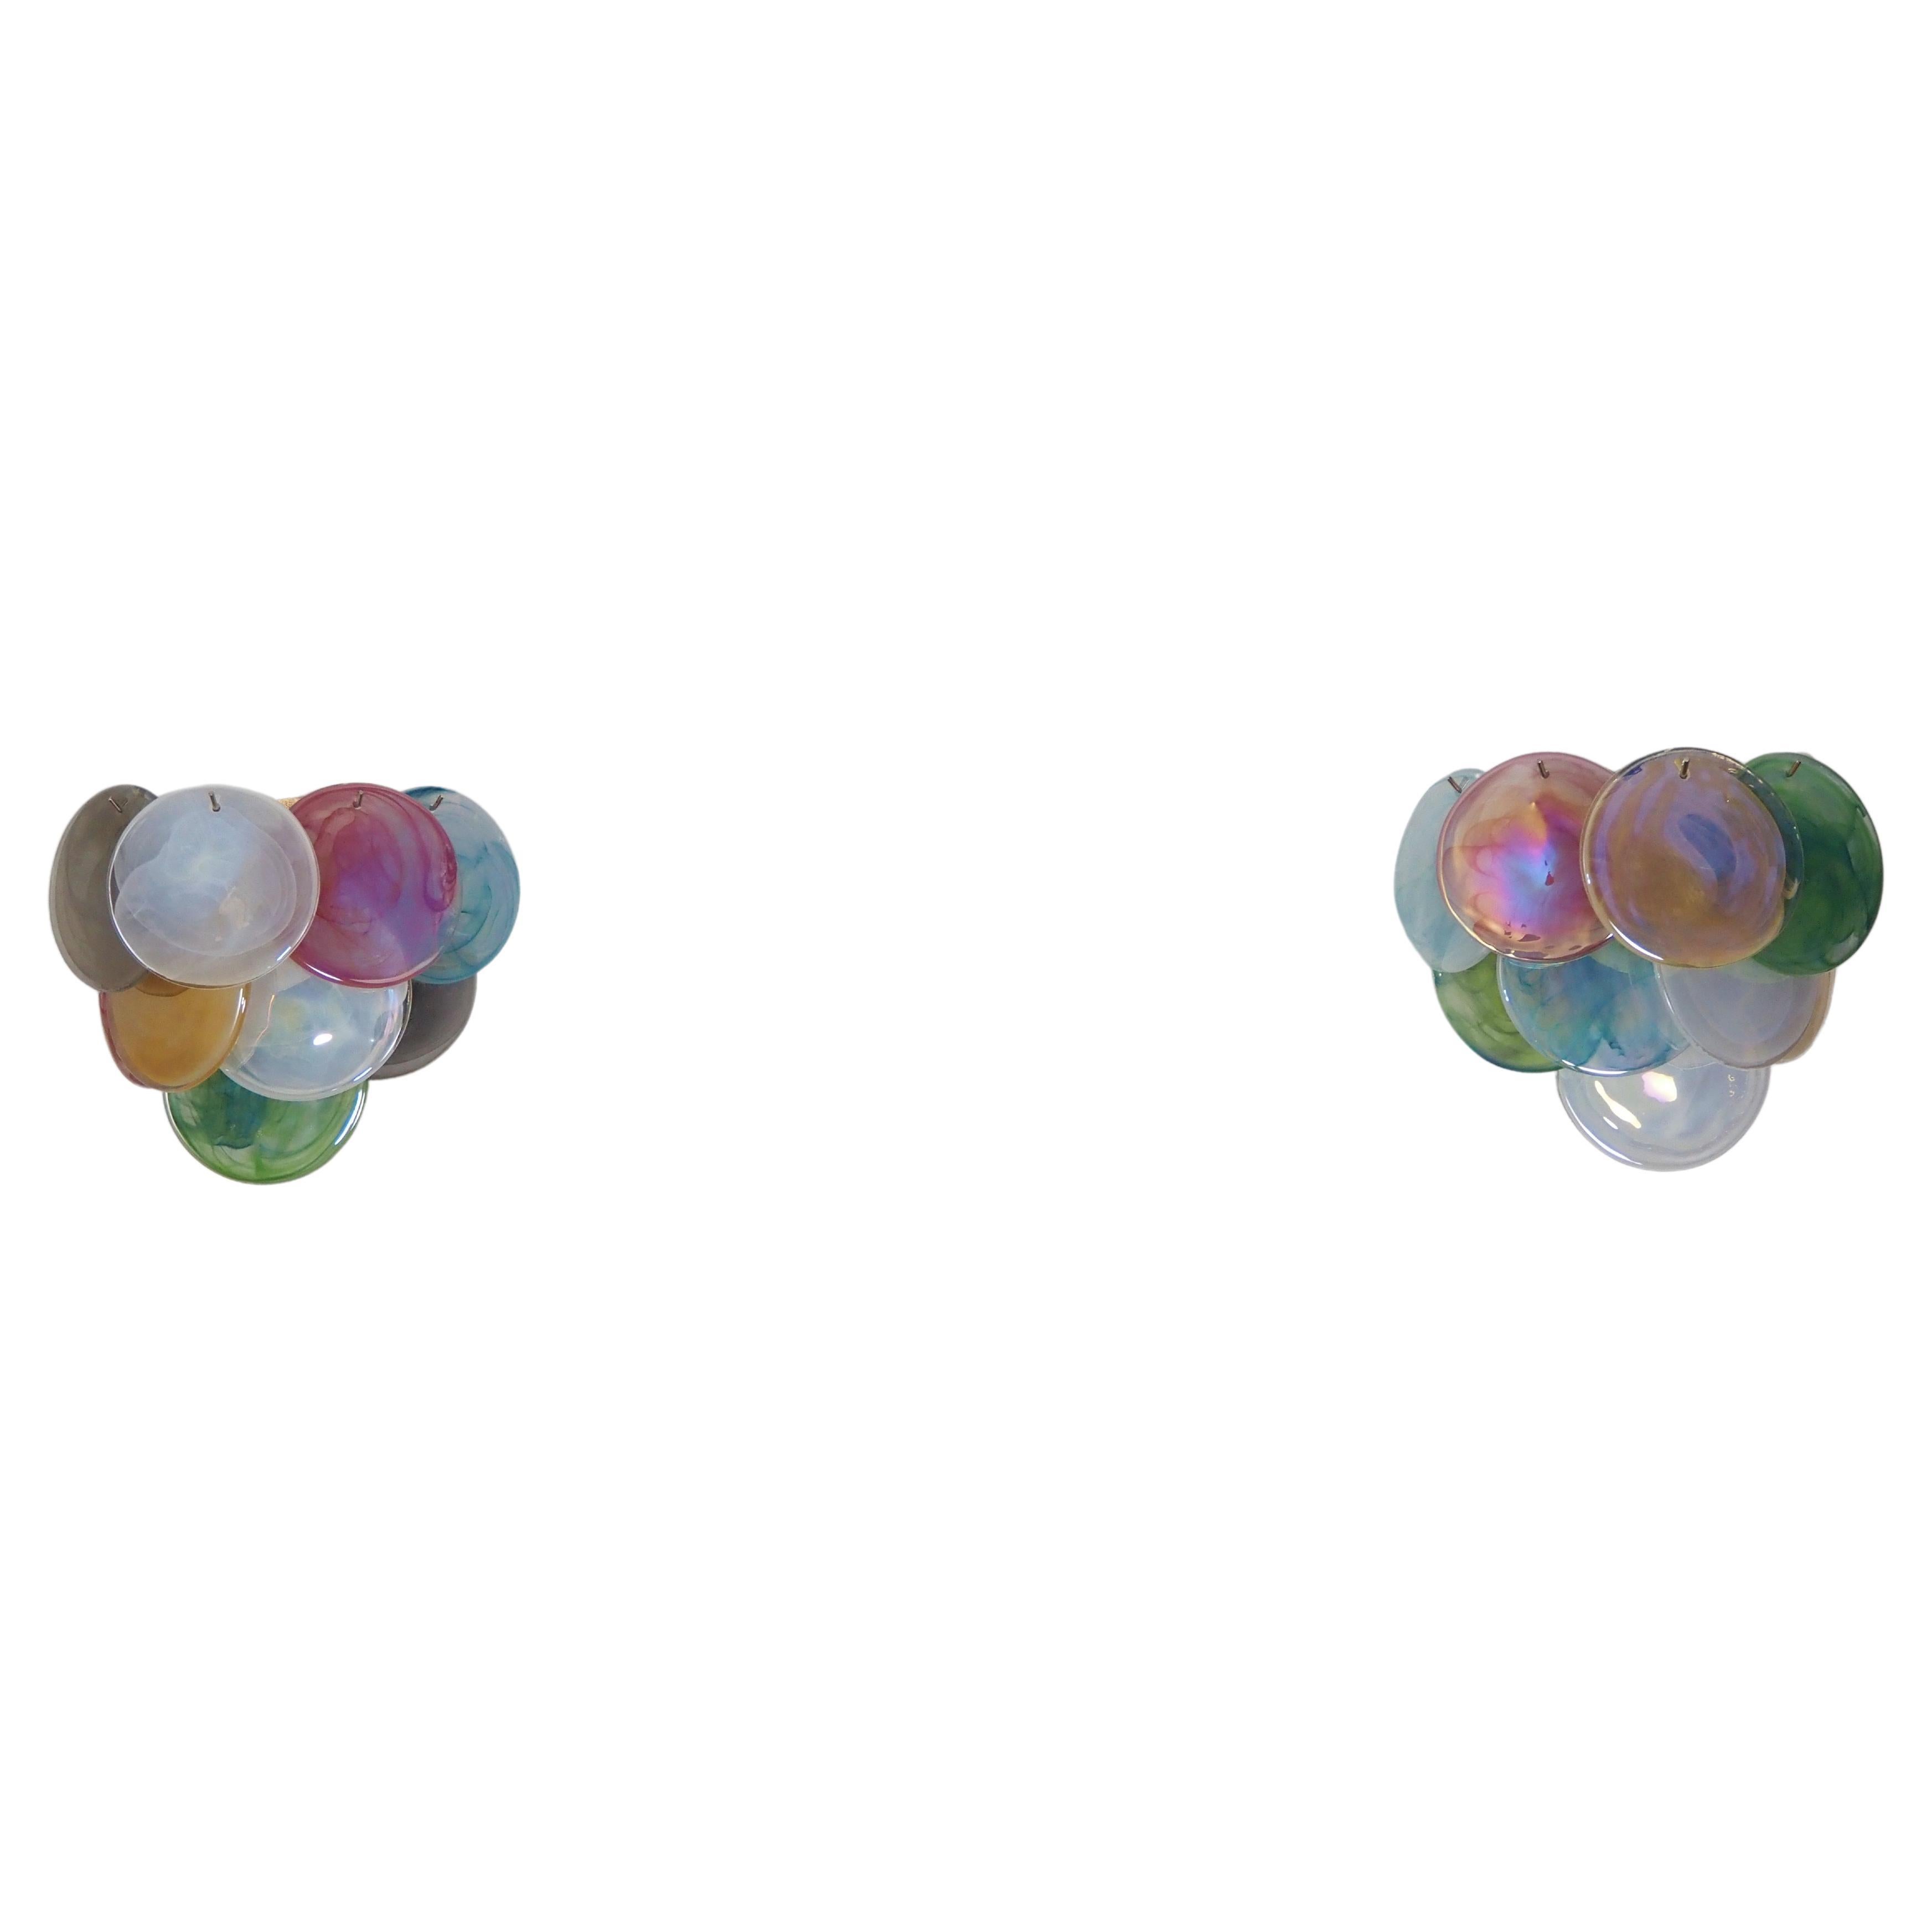 Fantastic Pair Sconces - 10 Multicolored Murano Alabaster Glasses